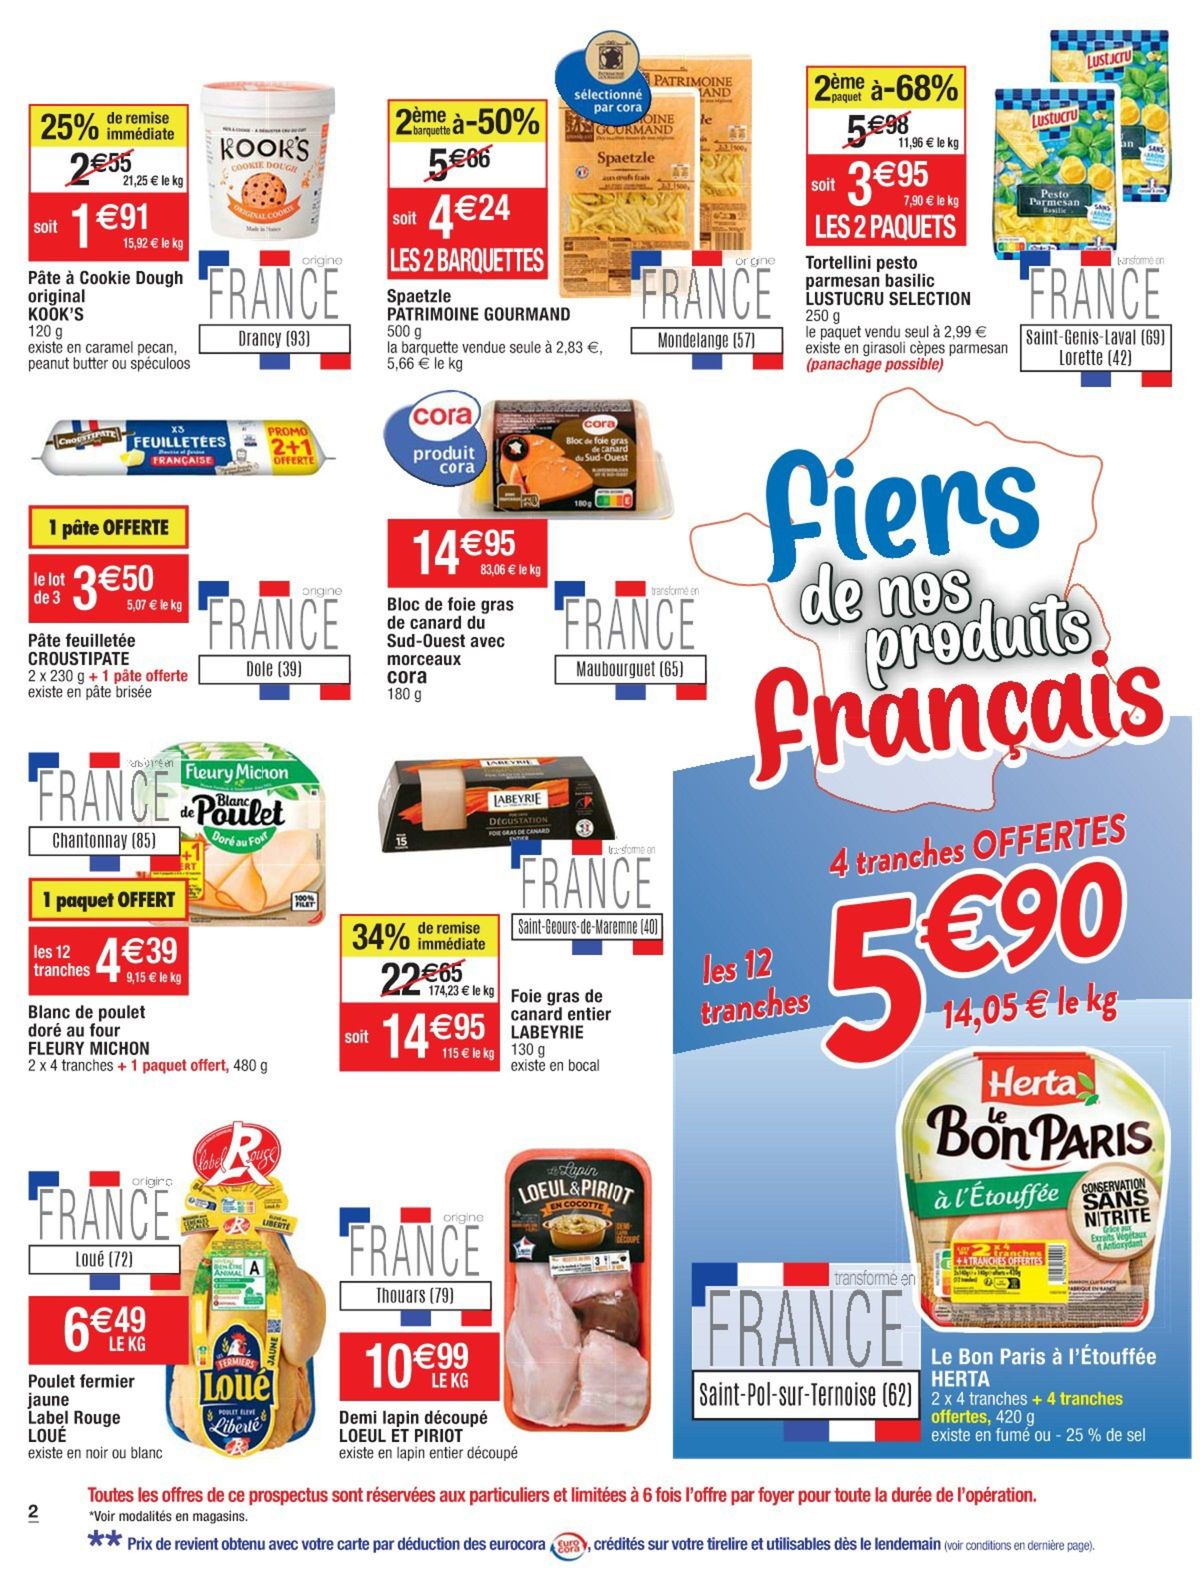 Catalogue Fiers de nos produits français, page 00012